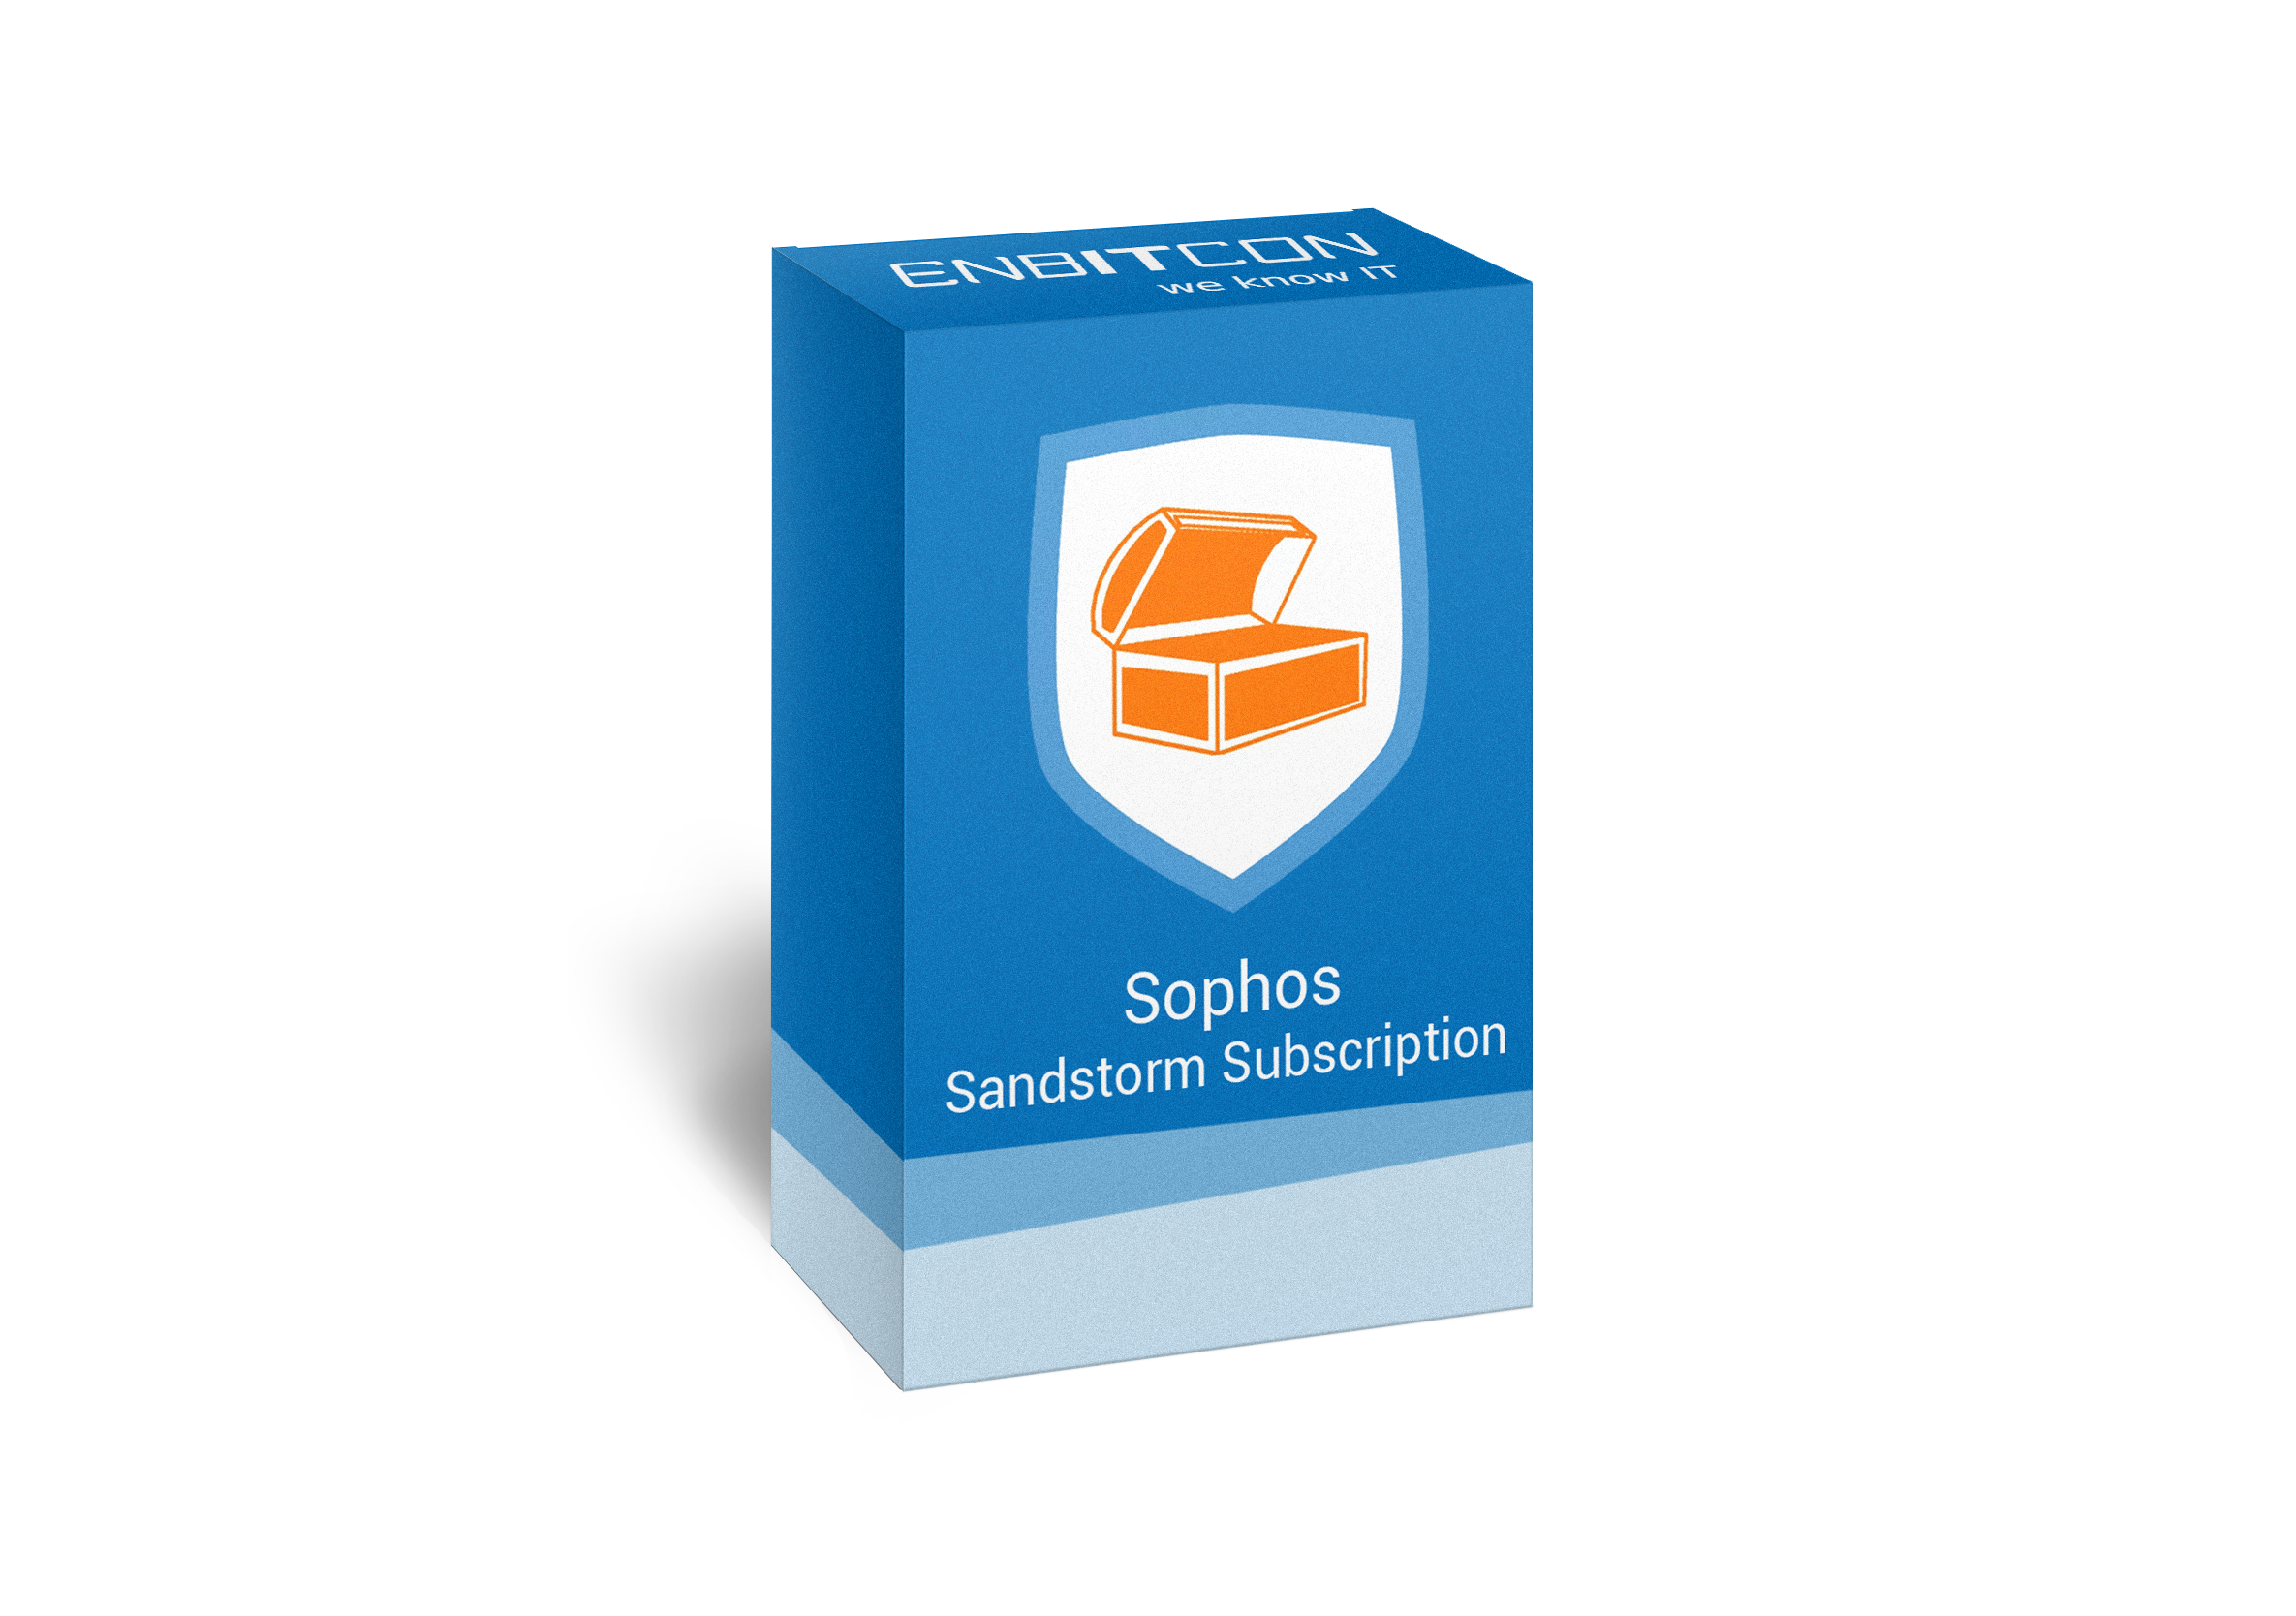 Sophos Sandstorm Subscription Box Vorschaubild bestehend aus einem blauen Schild, indem sich eine orangene Truhe befindet, auf einer blauen Box